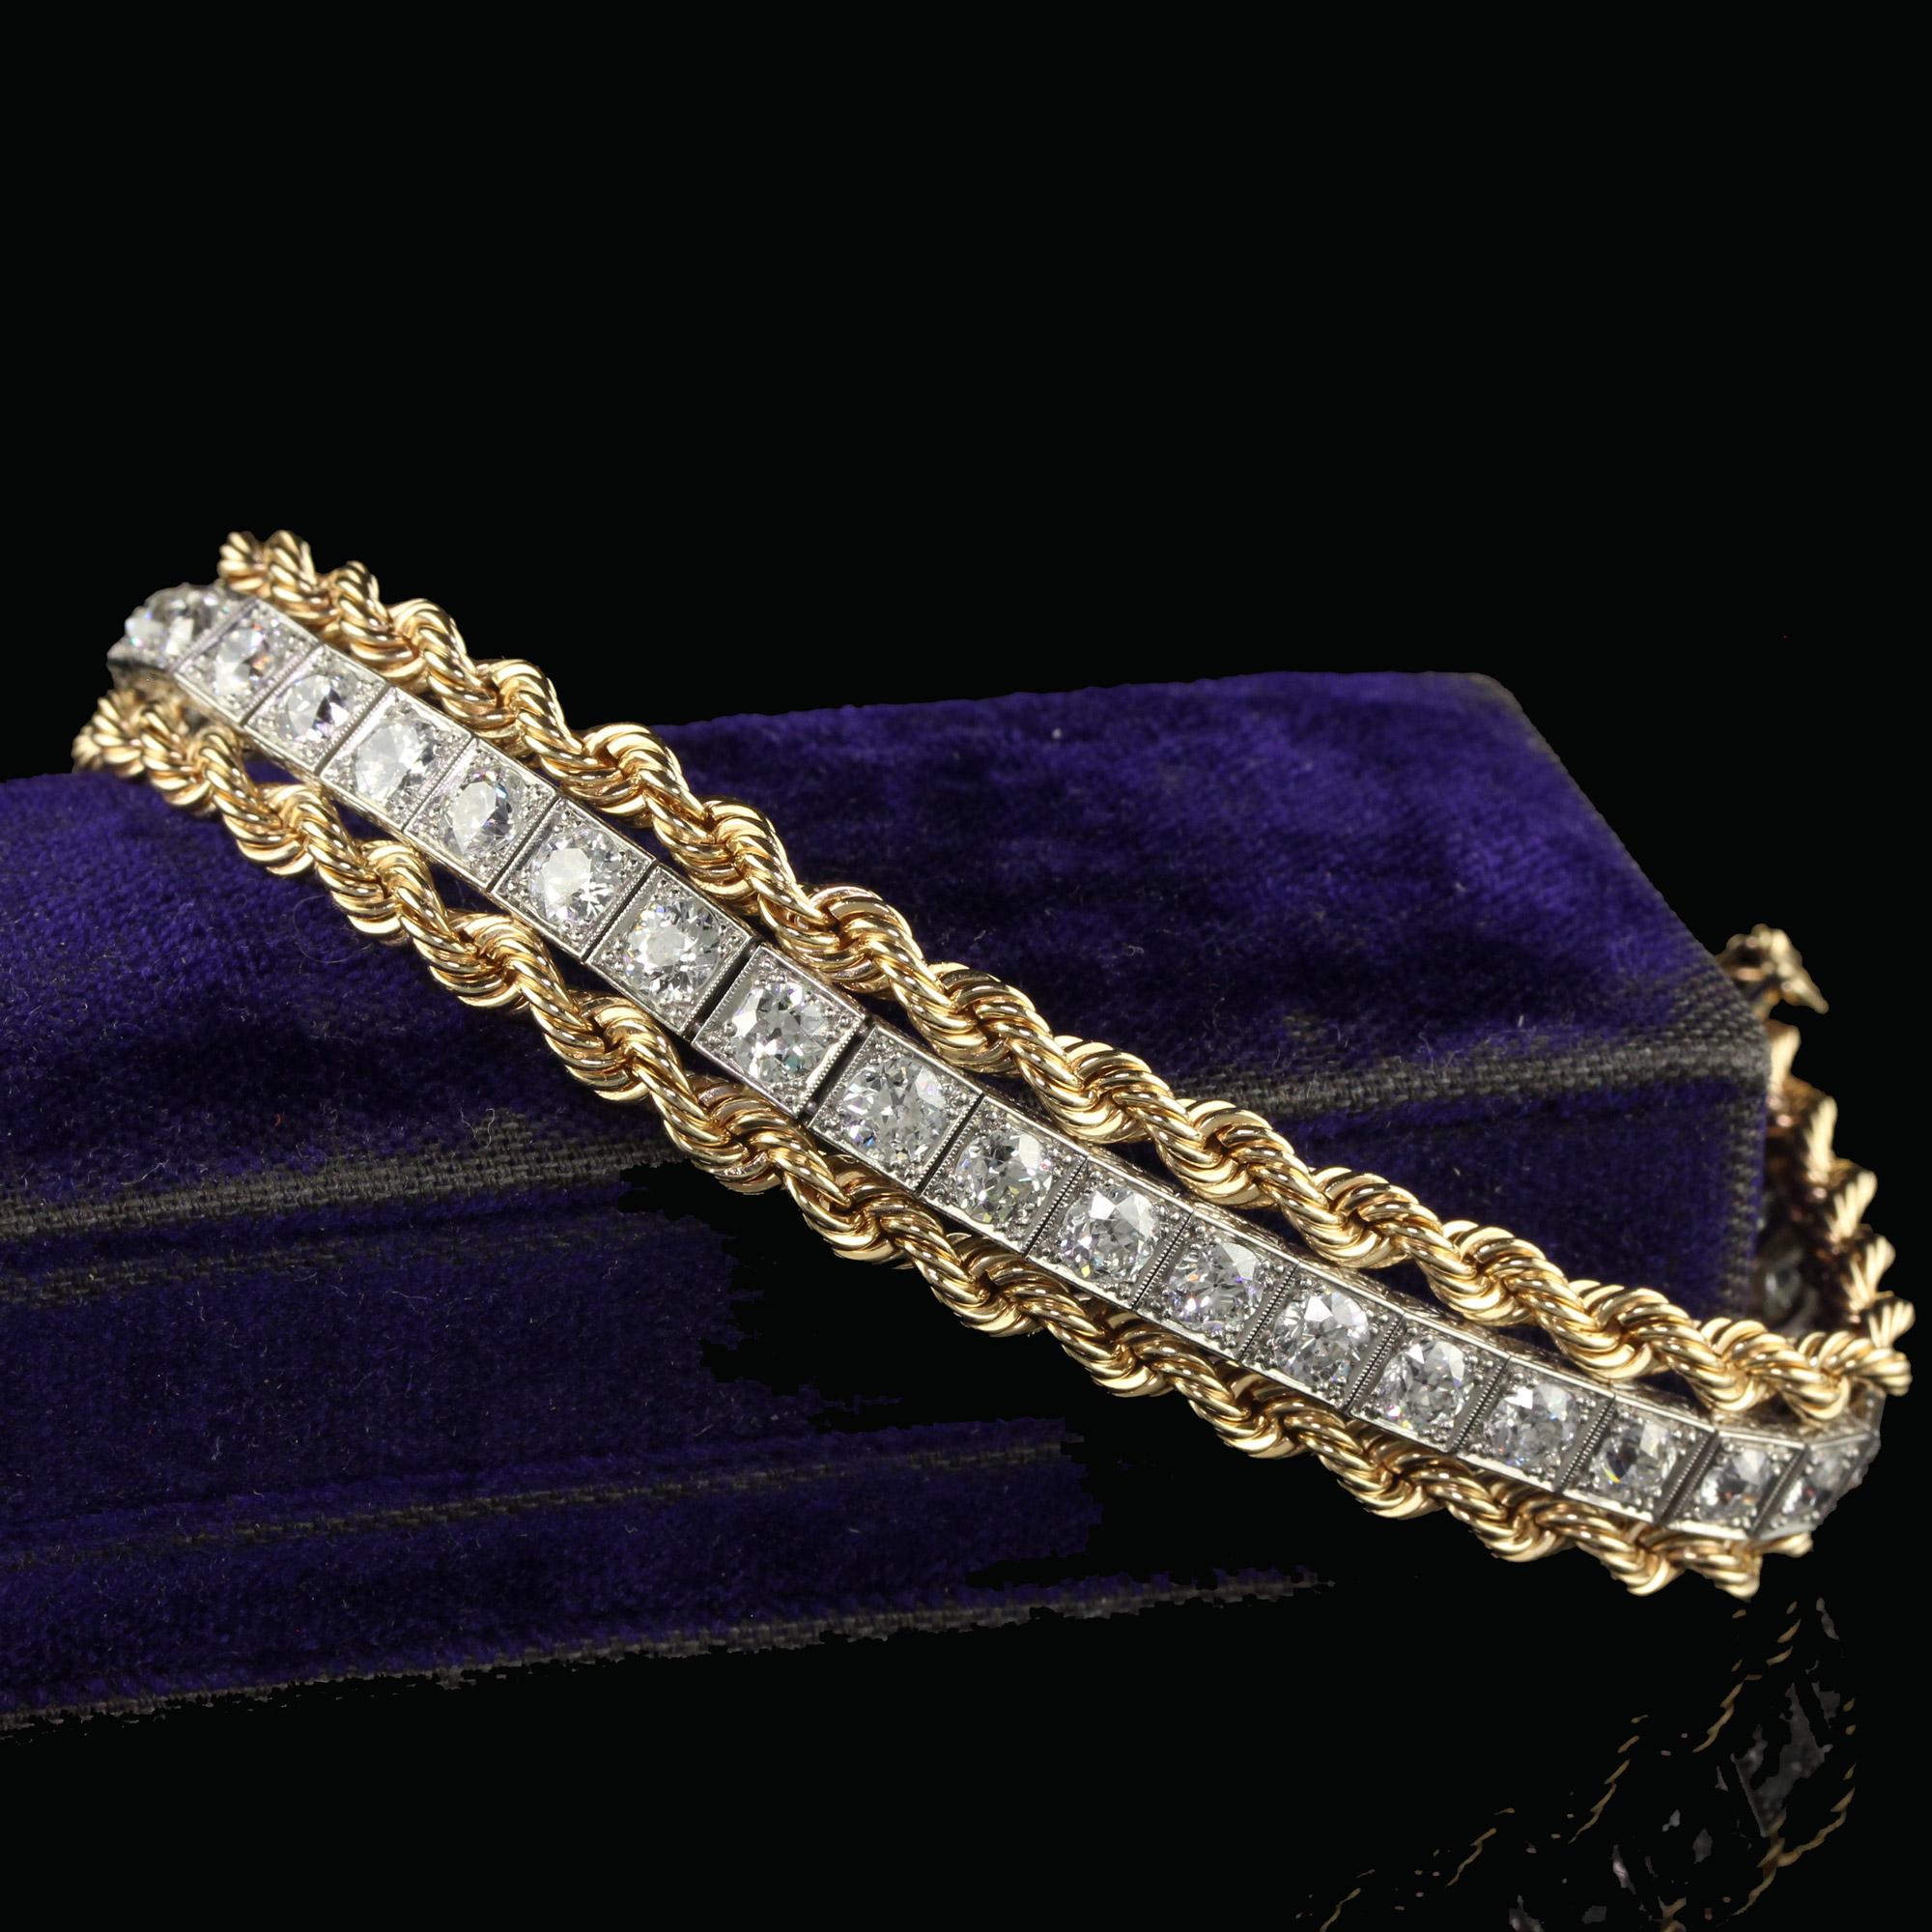 Magnifique bracelet antique rétro art déco platine or jaune diamant vieil euro. Ce magnifique bracelet vintage estate en diamants européens anciens est réalisé en platine et en or jaune. Ce bracelet est un mariage de deux époques différentes qui se